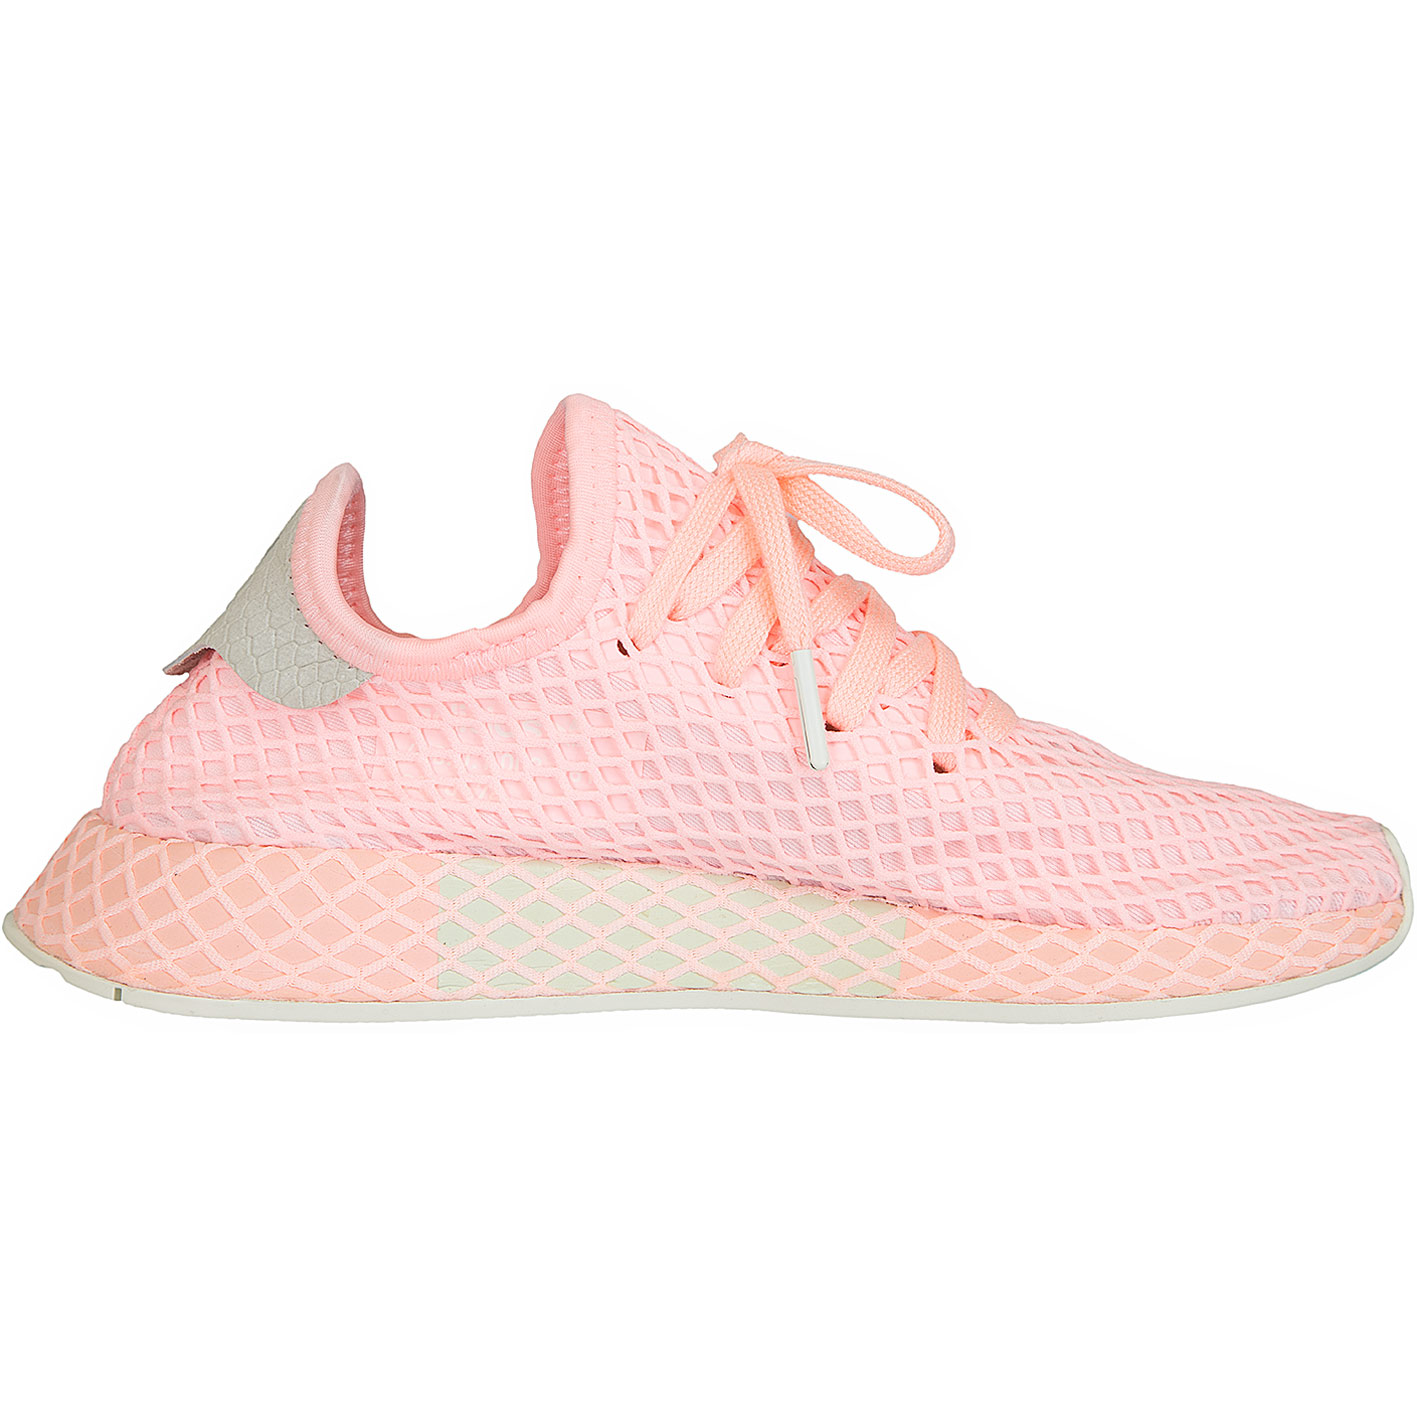 ☆ Adidas Originals Damen Sneaker Deerupt Runner pink - hier bestellen!